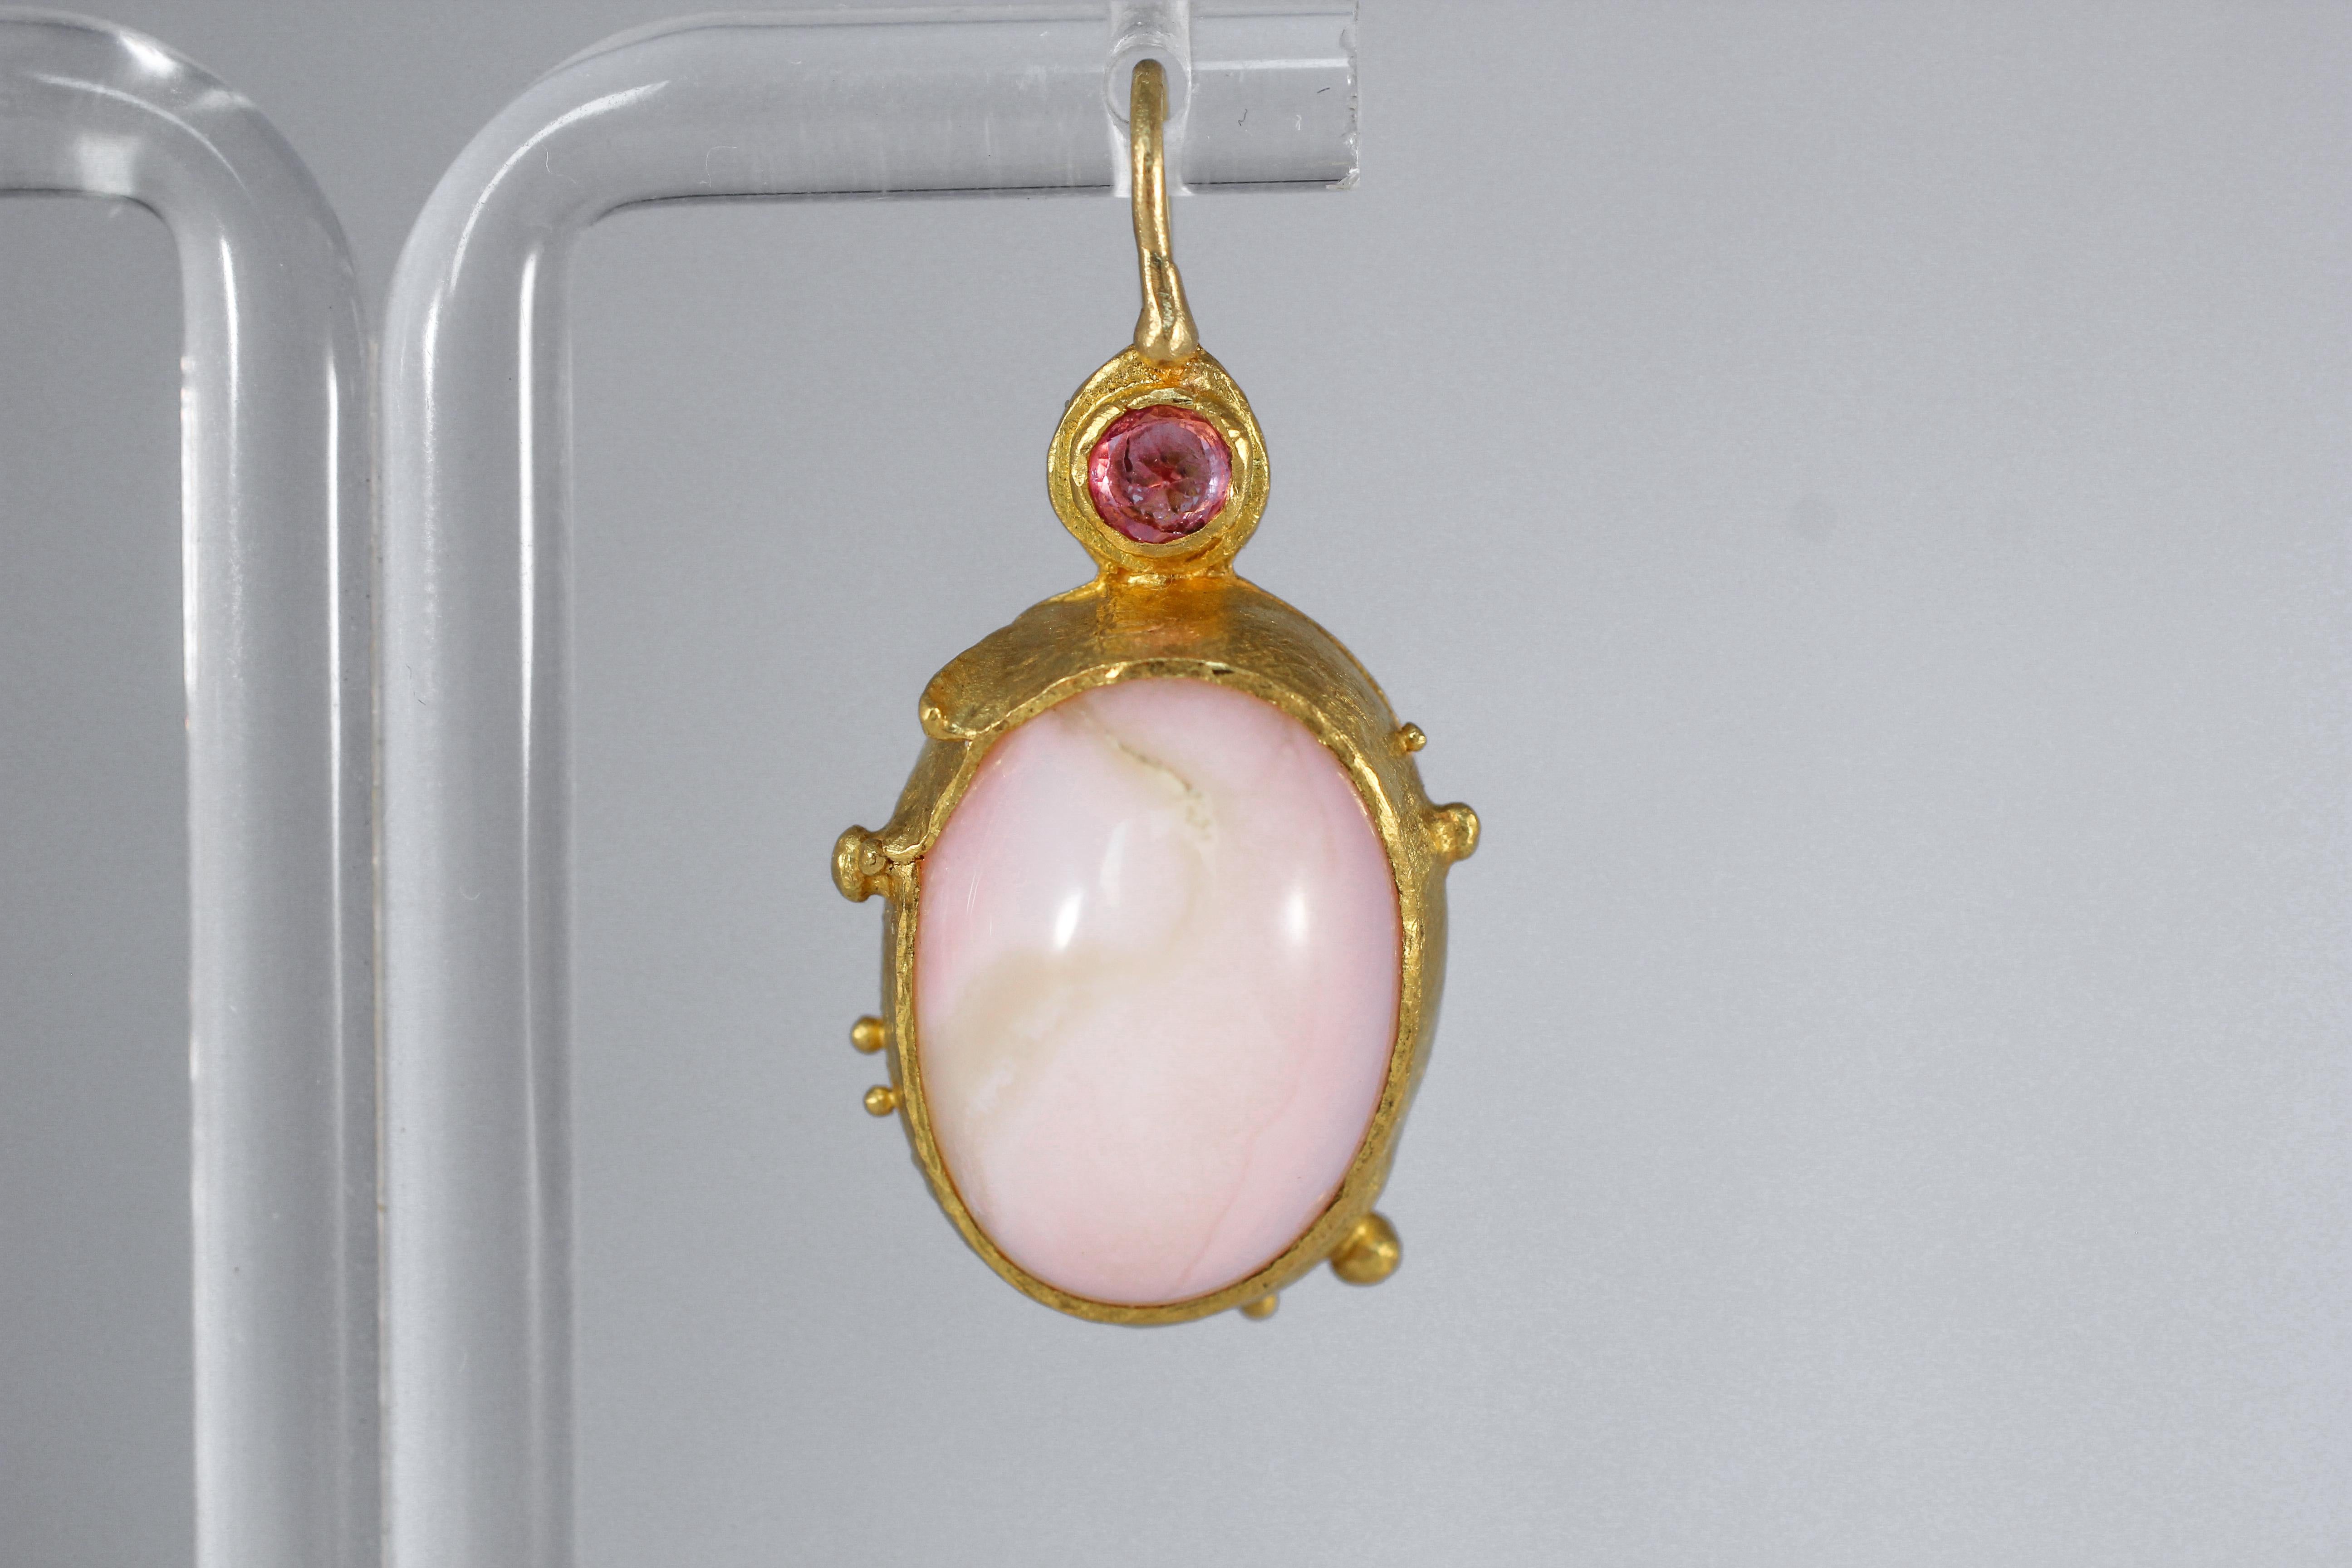 Diese zarten rosa Opal-Ohrringe sind eine elegante Ergänzung für jedes Outfit. Rosen-Ohrringe. Sie sind bequem und lassen sich leicht mit jedem Look kombinieren. Handgefertigt. Einzigartig.

Diese Tropfenohrringe wurden von modernen künstlerischen